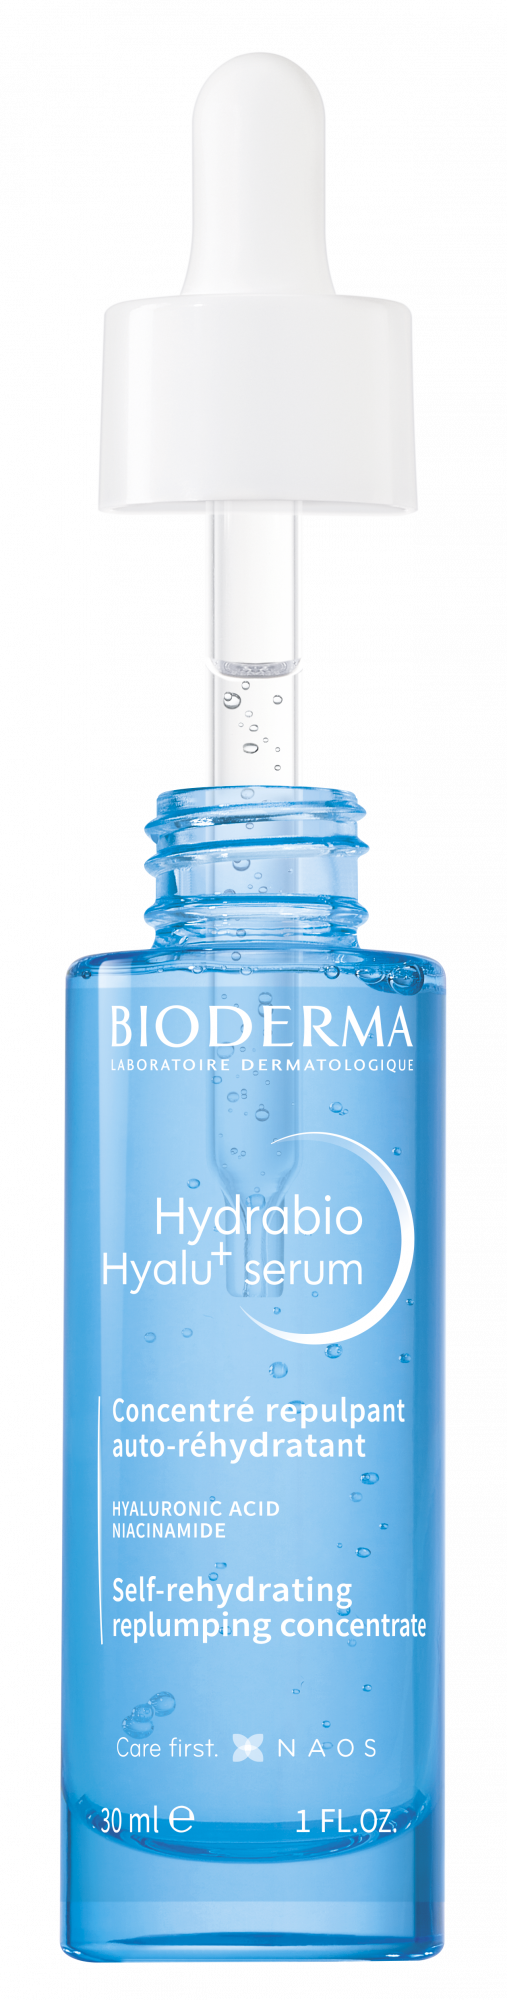 Bioderma Hydrabio Hyalu+ Sérum 30ml - Farmácia Garcia